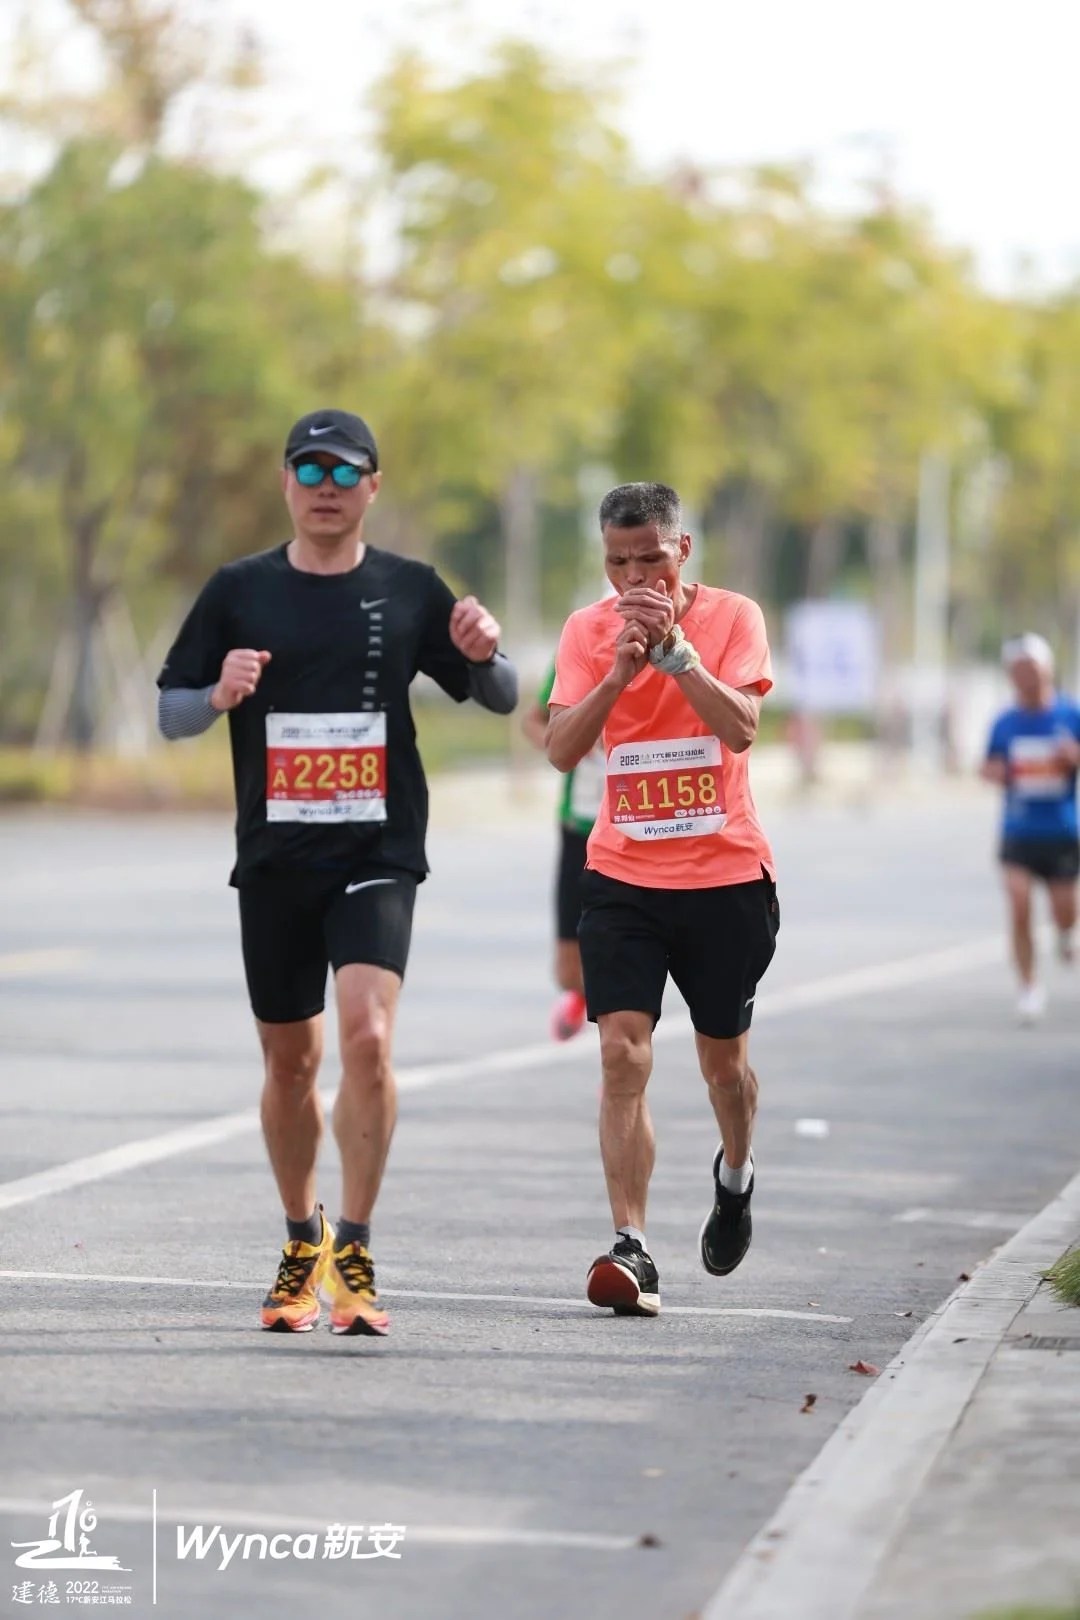 Man Completes 42-Km Marathon While Smoking